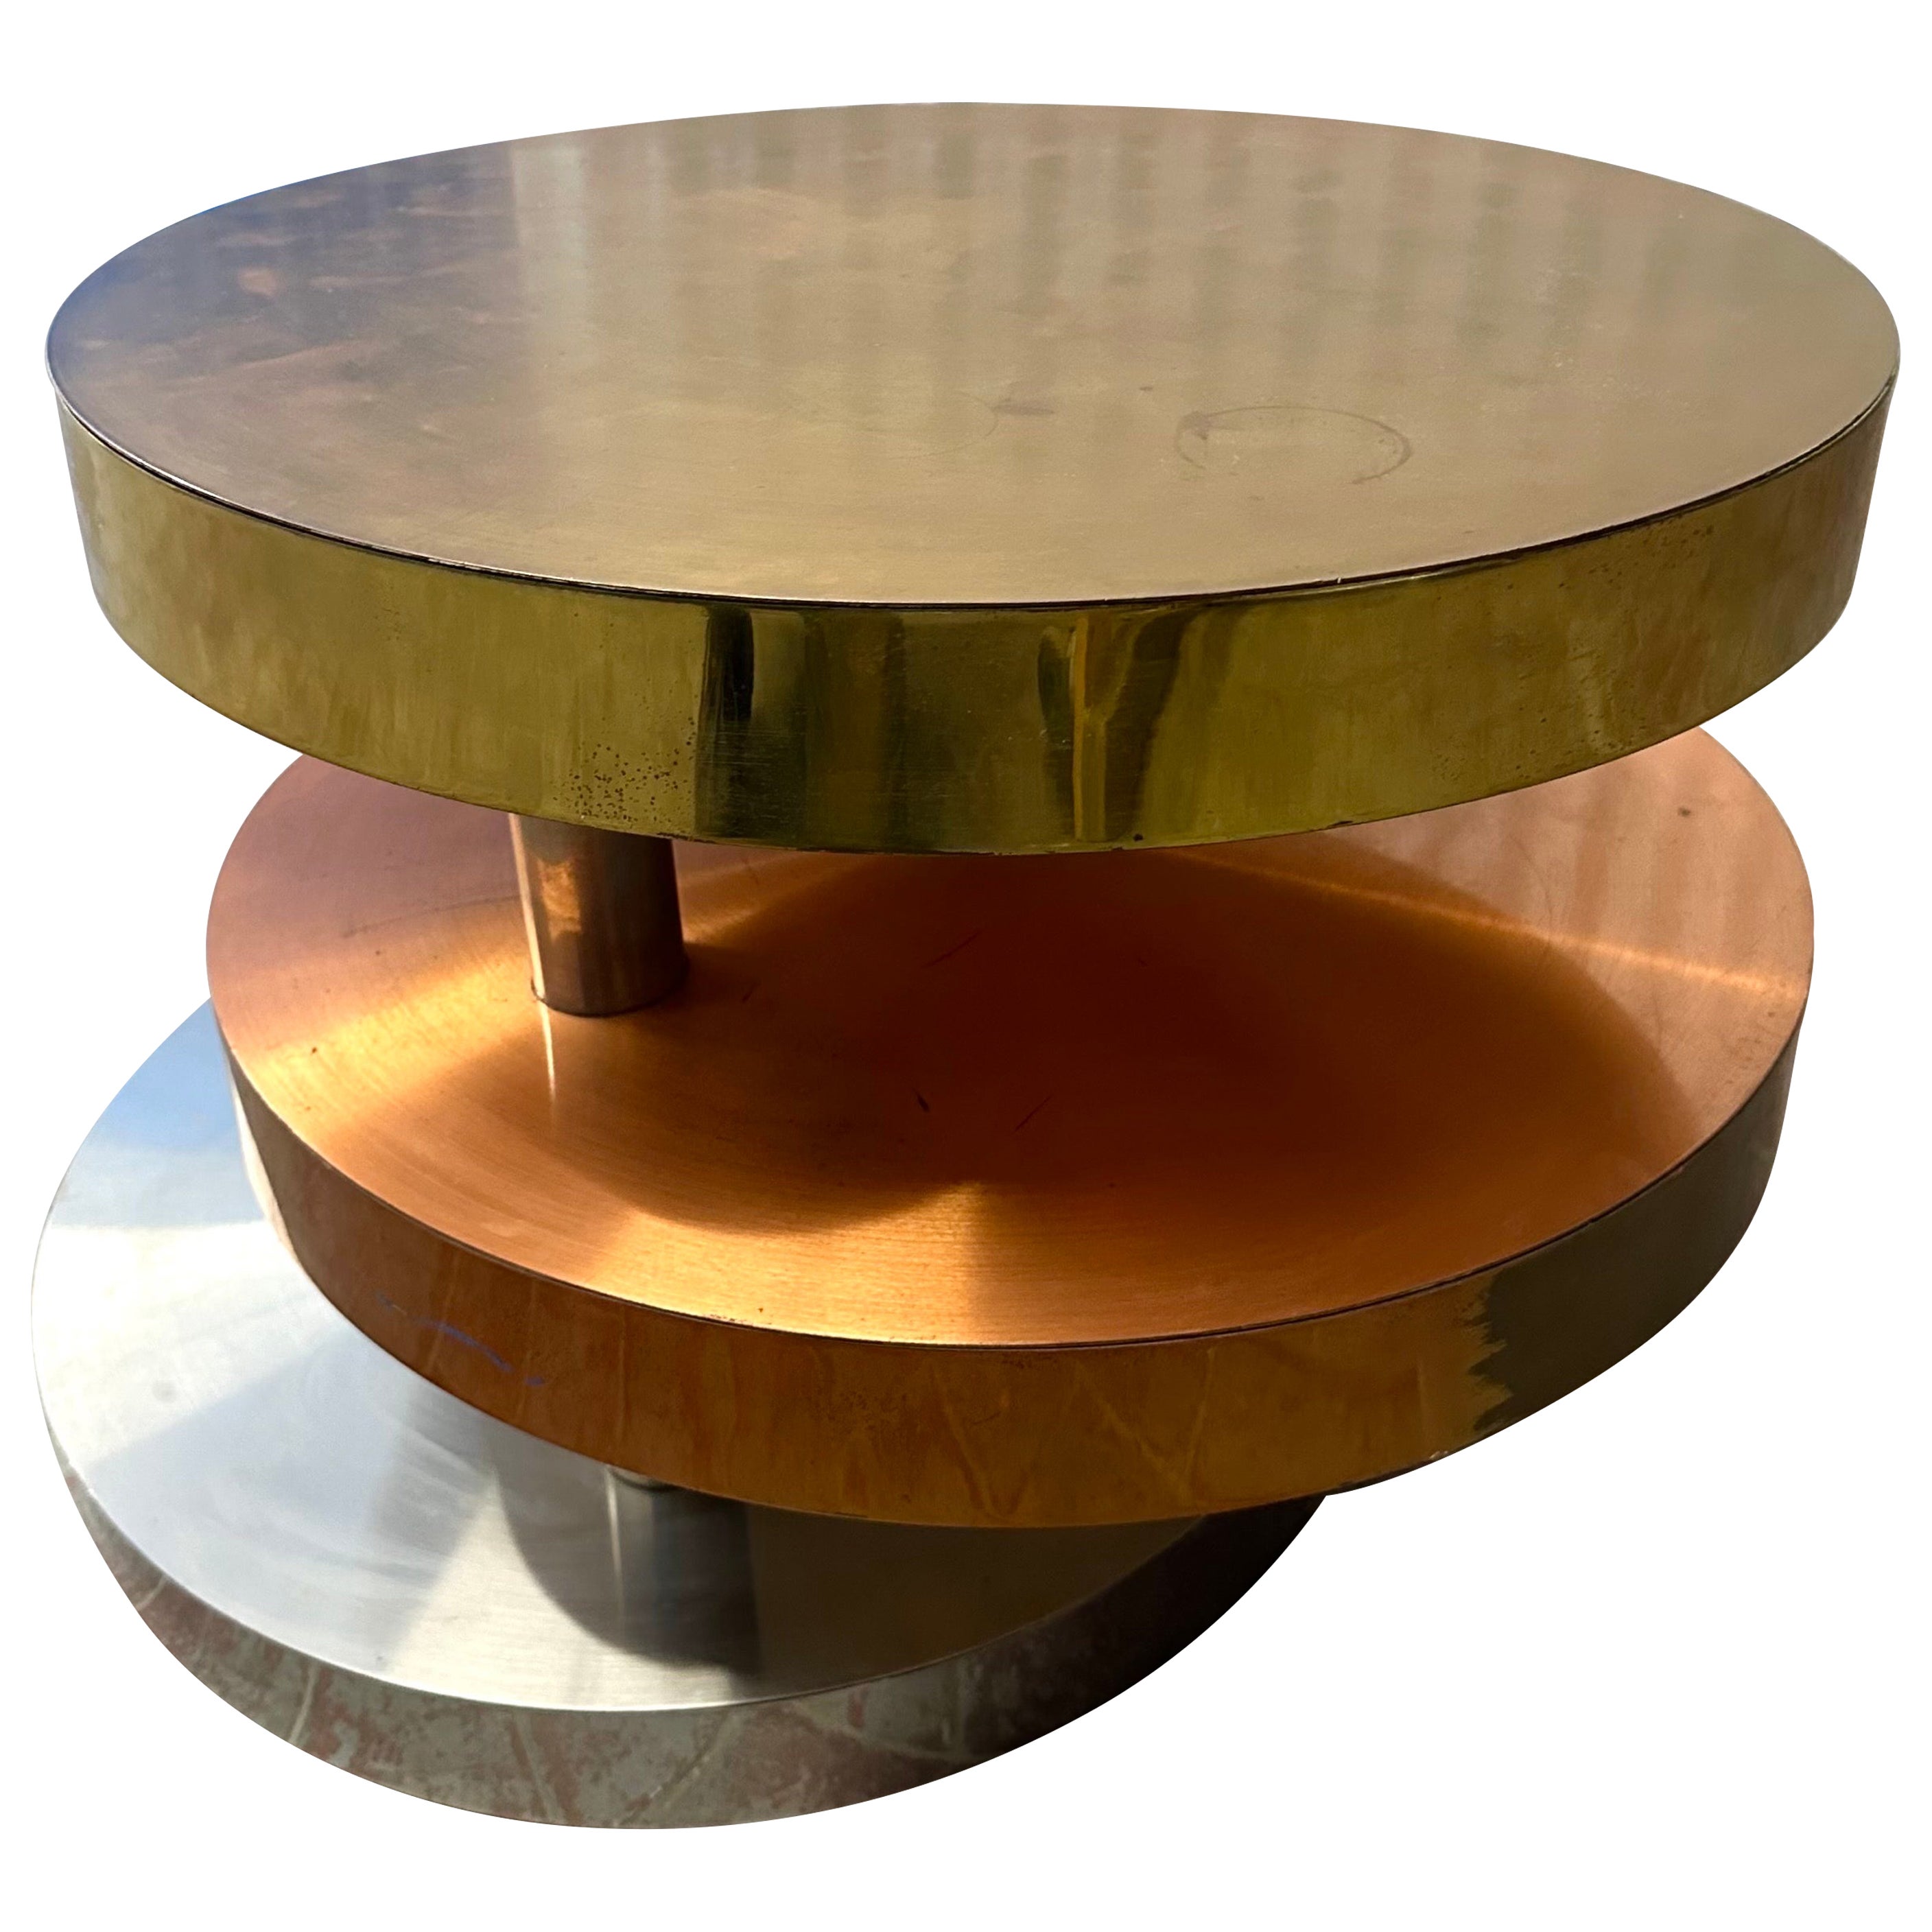 Lorin Marsh - Table à cocktail / table basse pivotante en métal mélangé